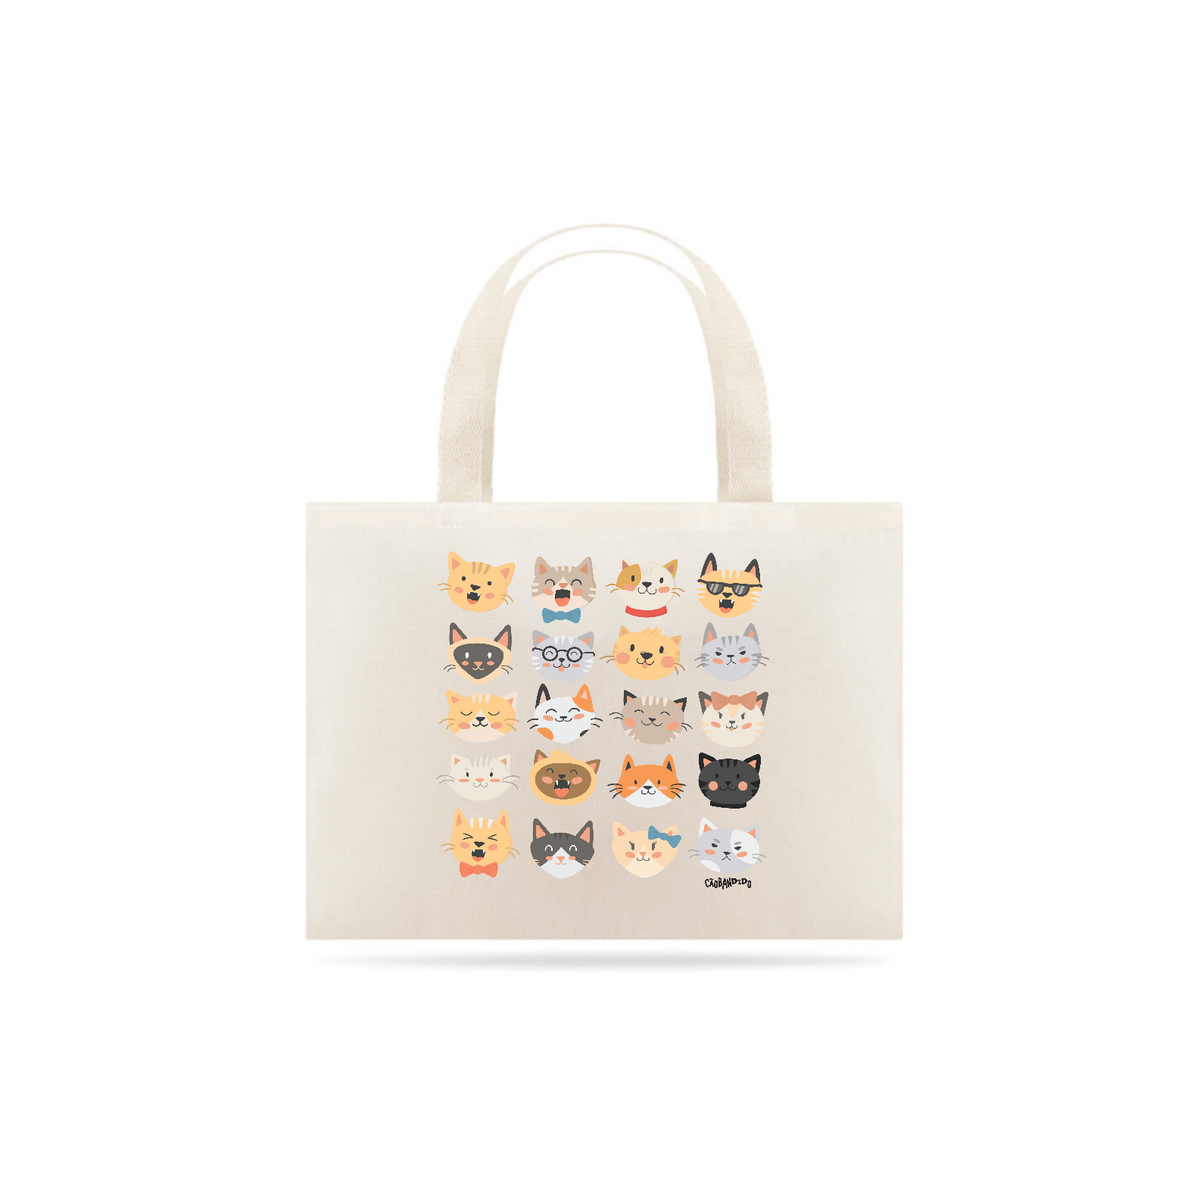 Nome do produto: Ecobag Cats Emoticons